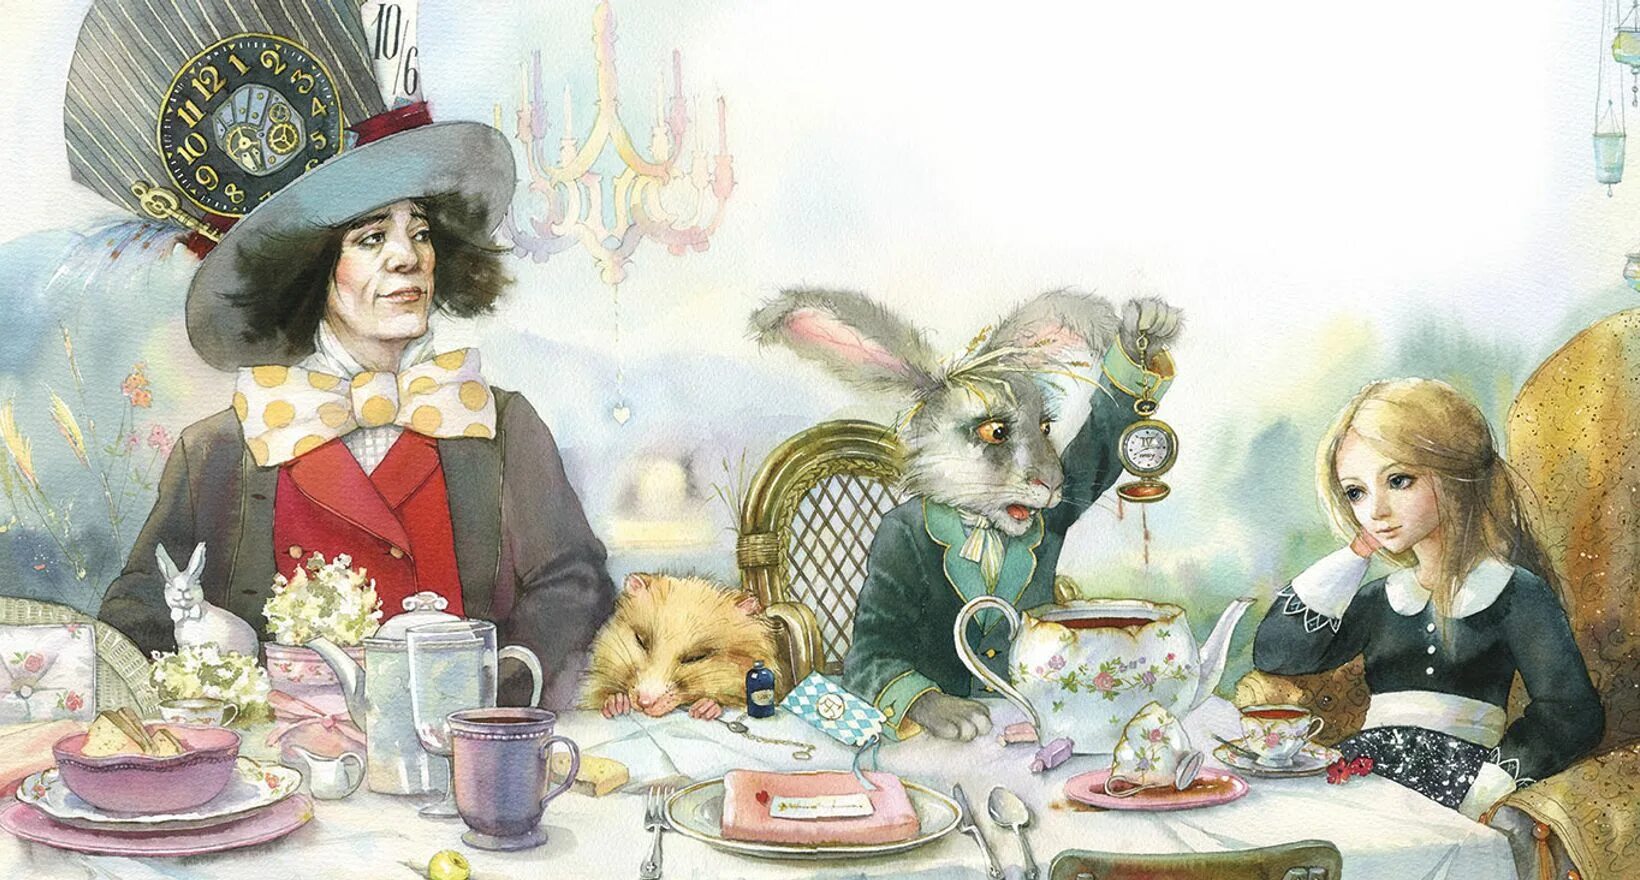 Алиса в стране чудес 9 глава. Кэрролл л. "Алиса в стране чудес". Алиса в стране чудес чаепитие. Алиса чаепитие у Шляпника. Алиса в Зазеркалье чаепитие.